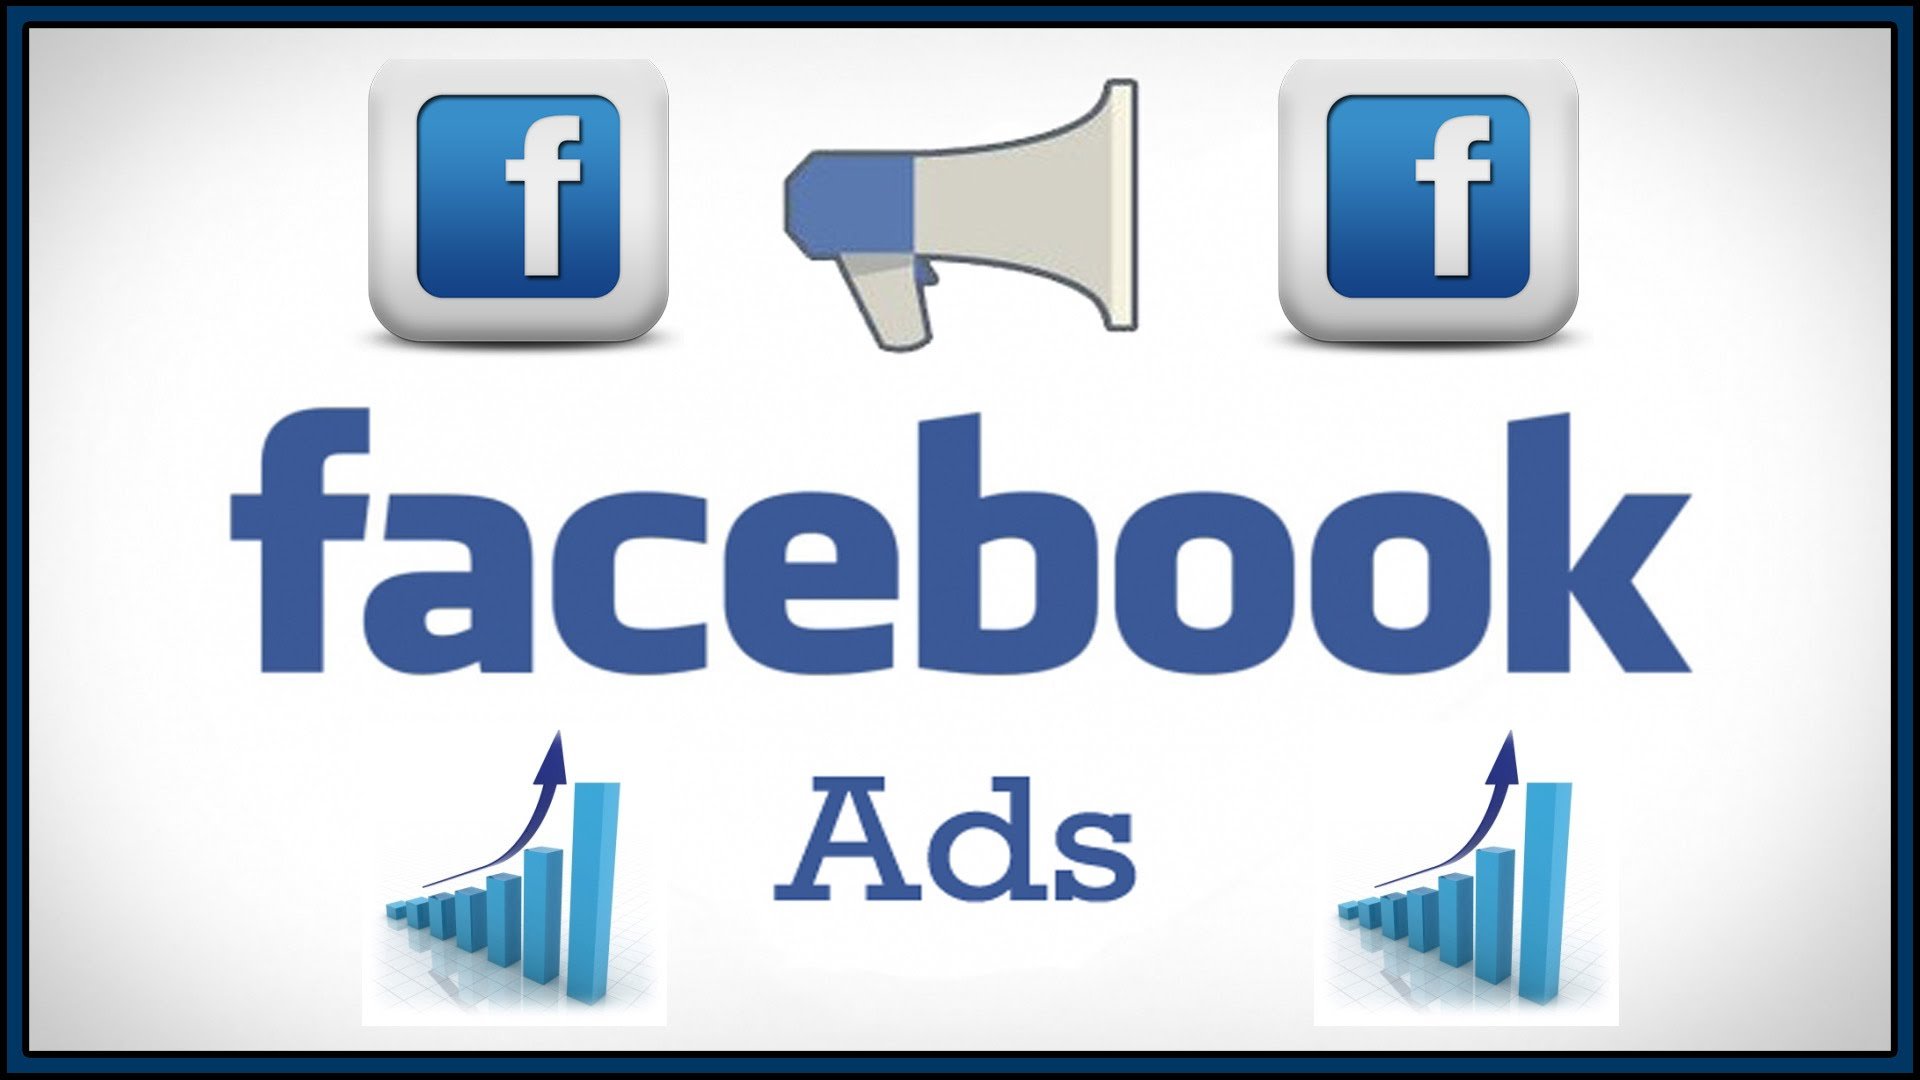 Facebook Ads là gì? Cách chạy Facebook Ads hiệu quả